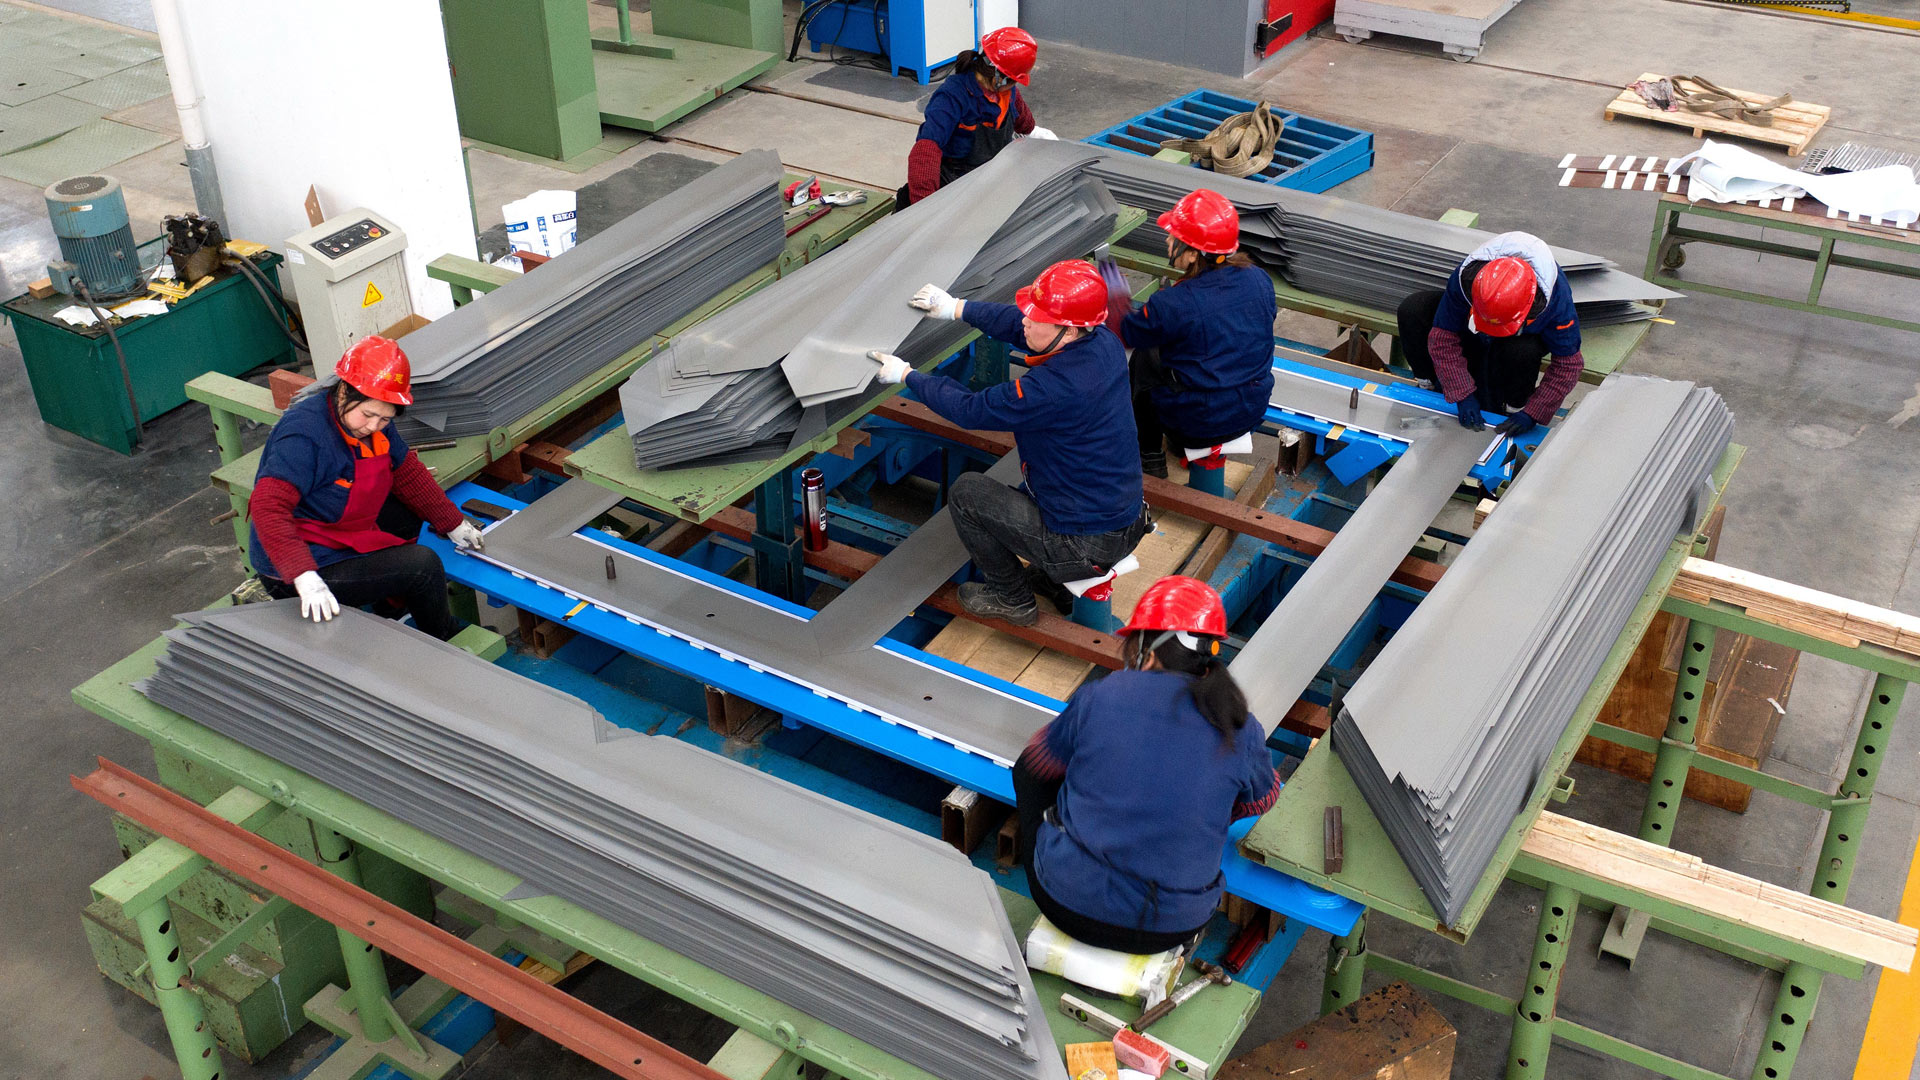 Arbeiter stapeln große Transformatoren an einer Produktionslinie  | picture alliance / Gu Huaxia / C